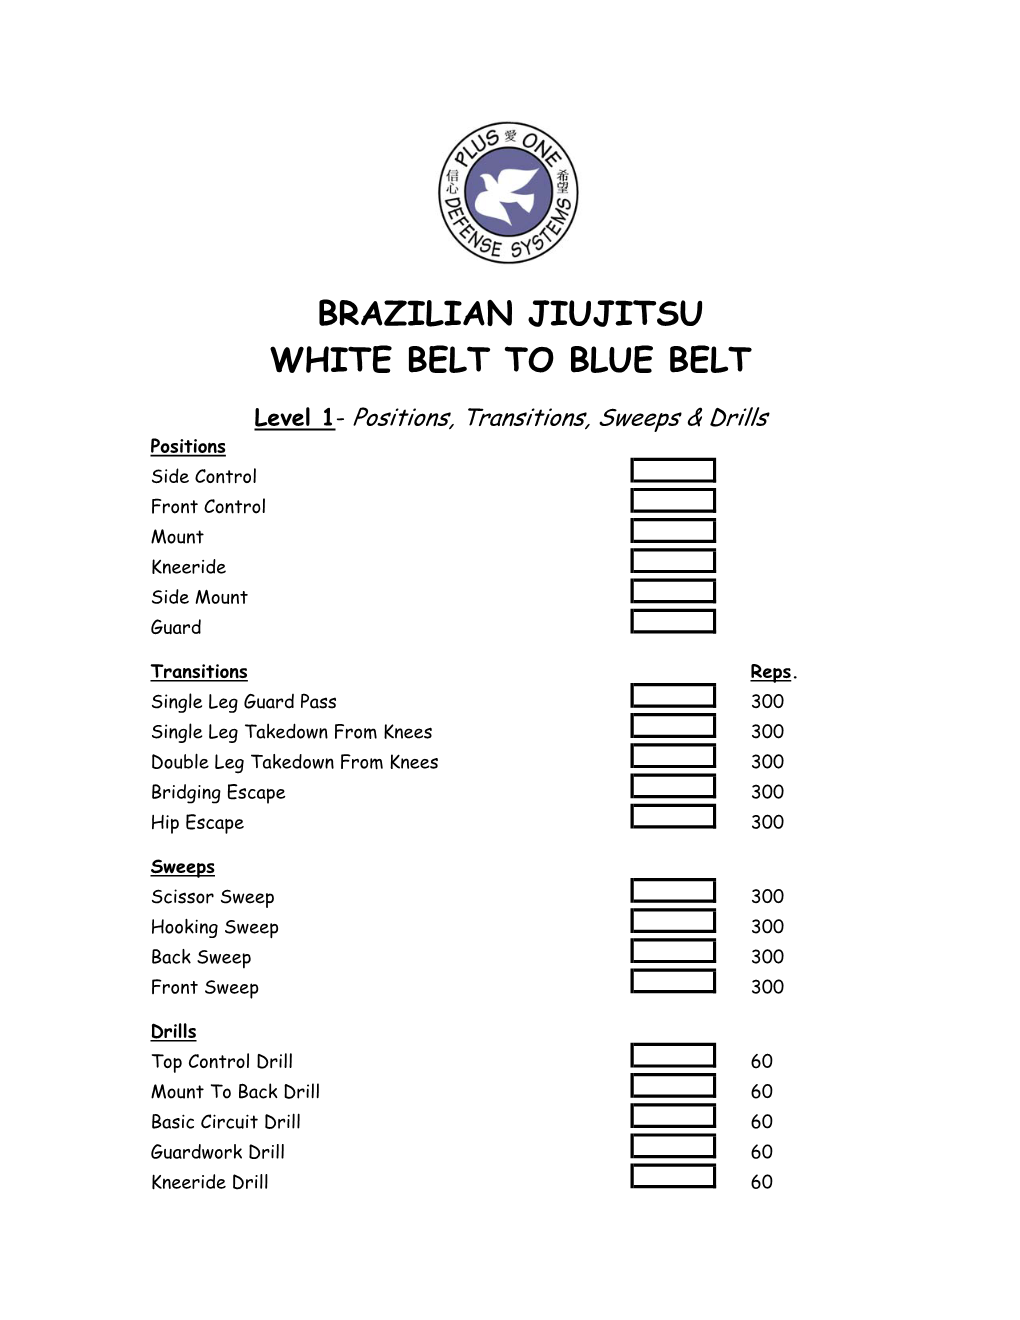 Brazilian Jiujitsu White Belt to Blue Belt